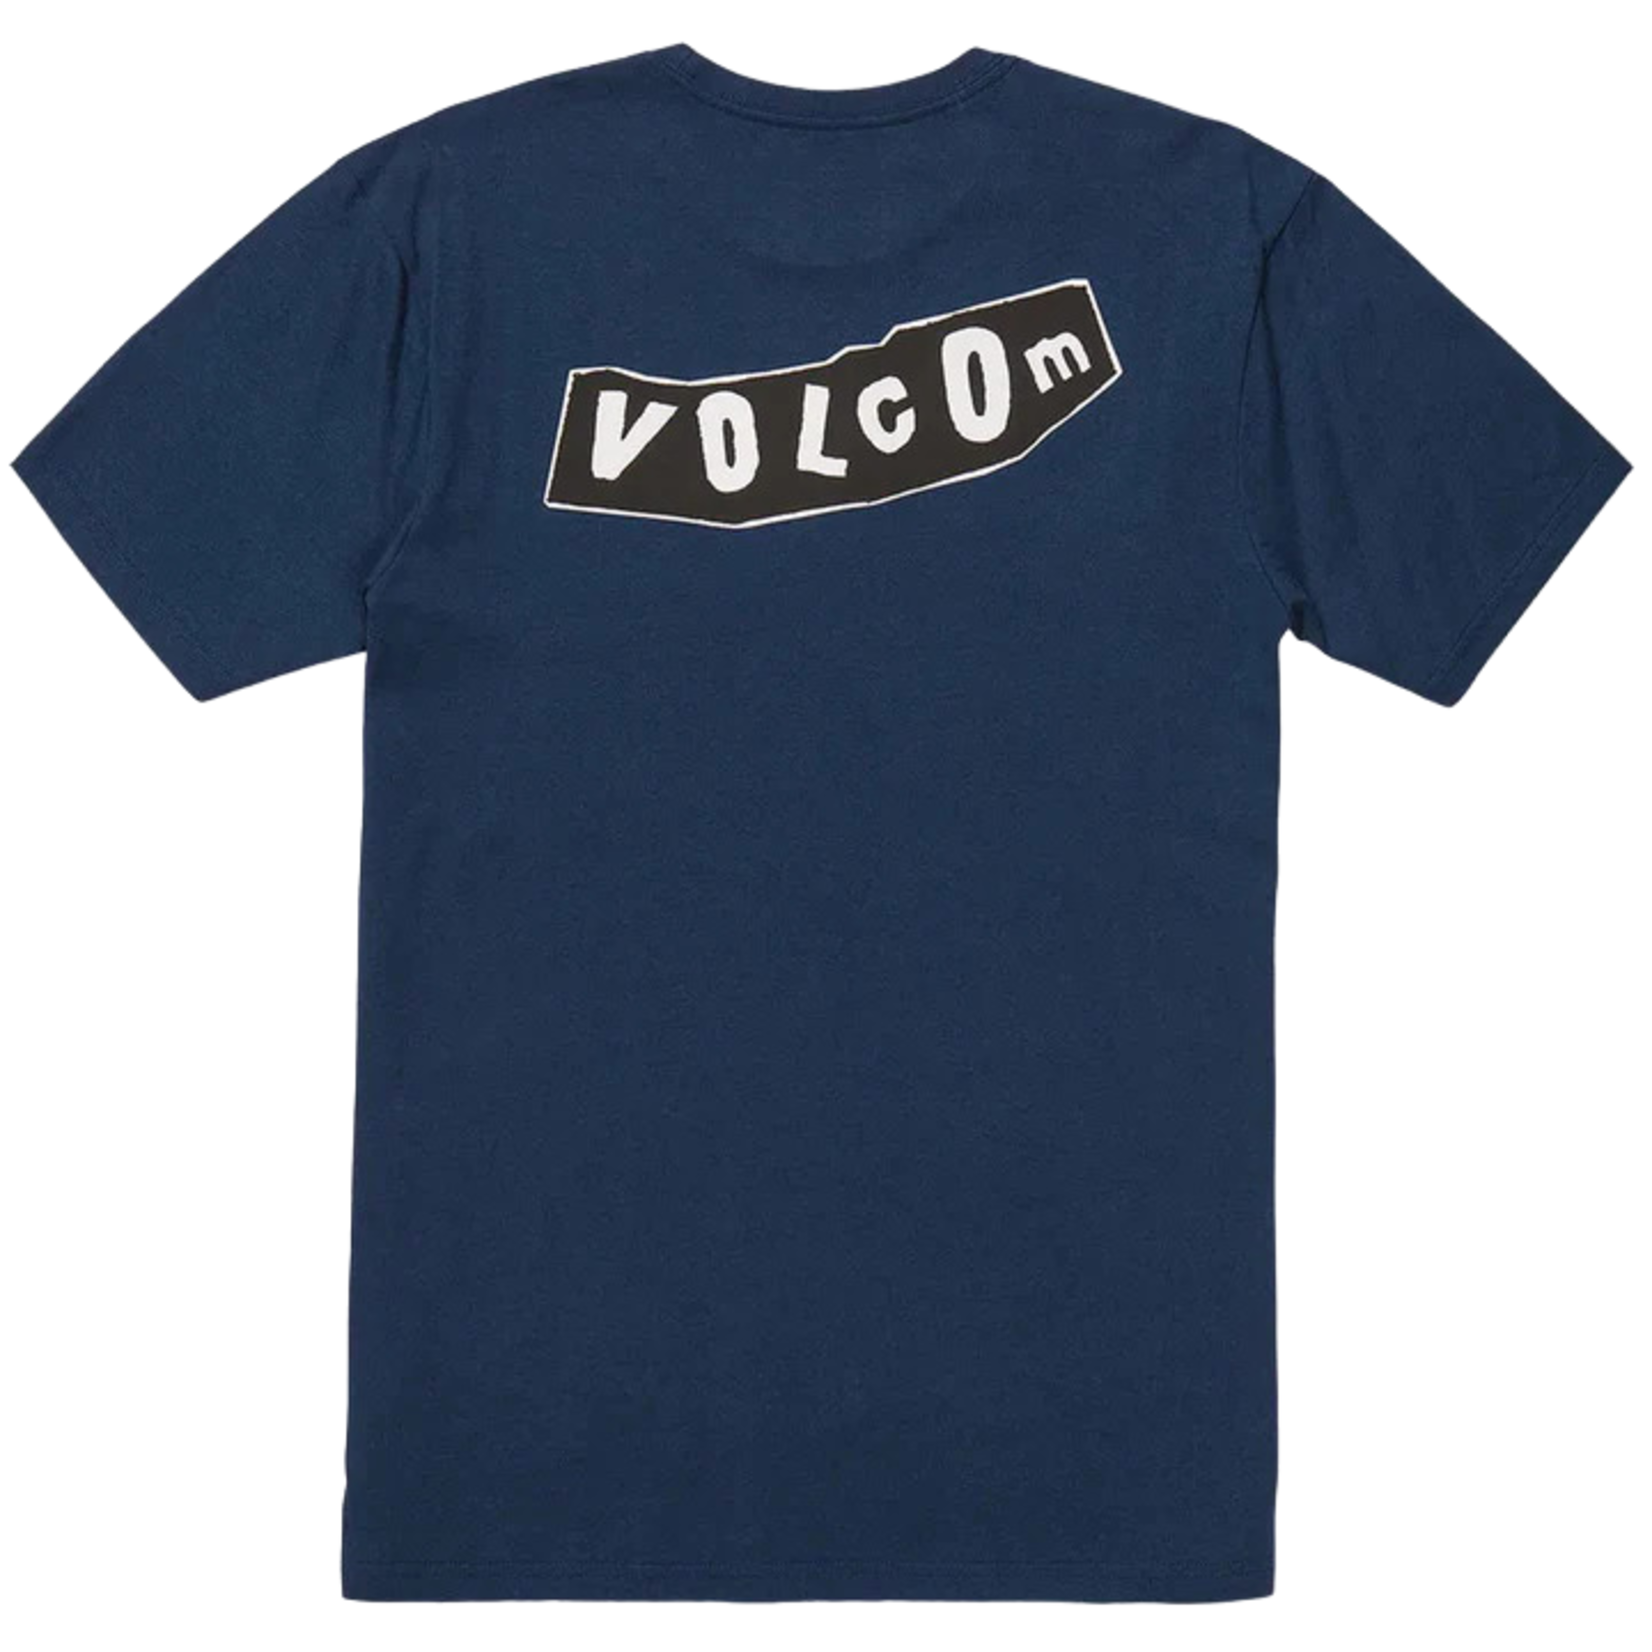 Volcom Volcom Skate Vitals Relics T-Shirt -